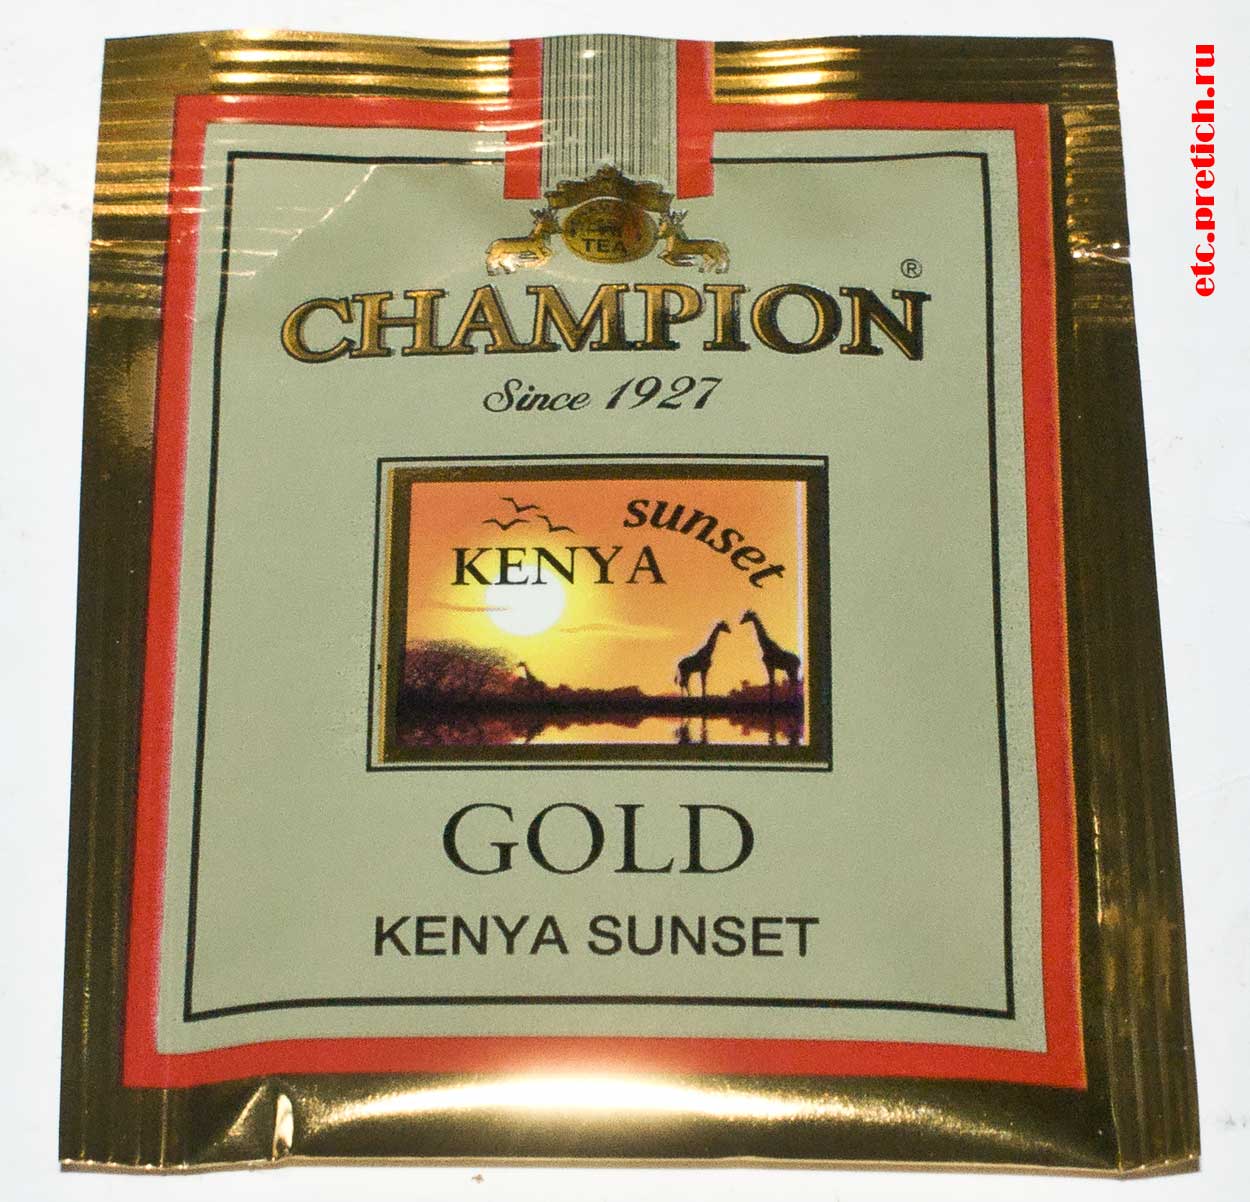 Champion Kenya Gold Sunset пакетный чай сделан из какой-то травы